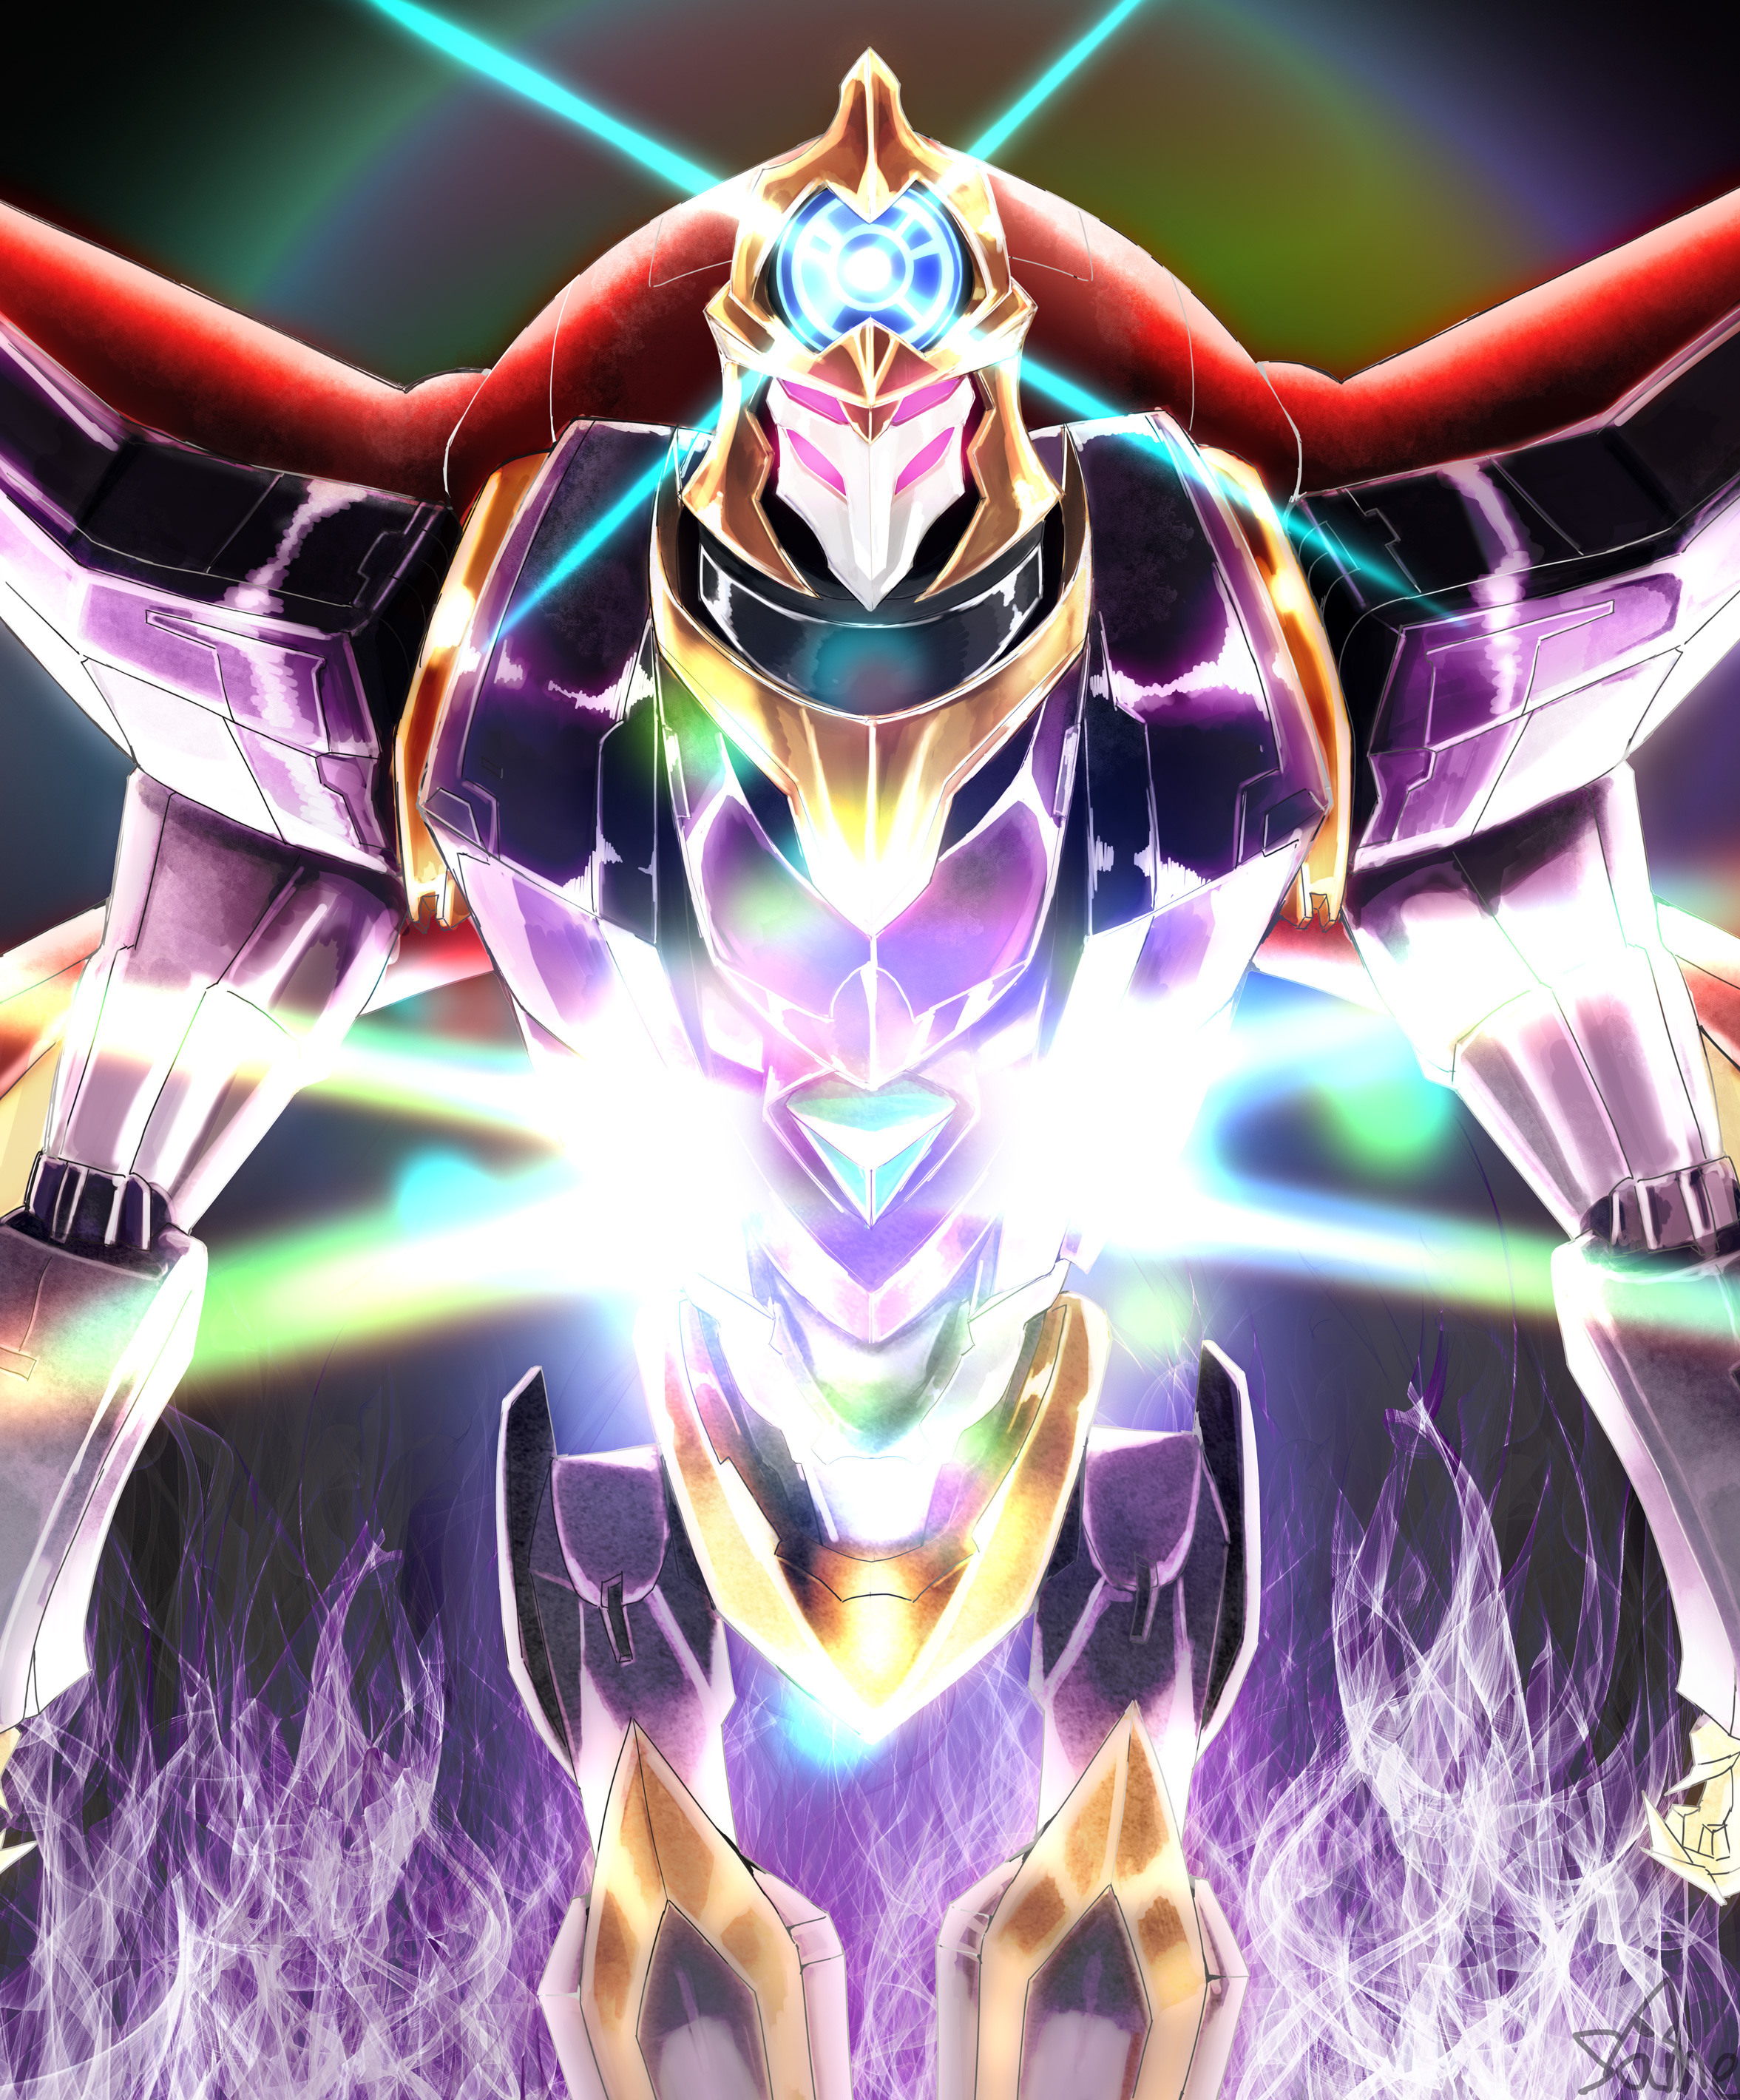 Anime 2353x2840 anime mechs Super Robot Taisen Code Geass Shinkirou (Code Geass) artwork digital art fan art